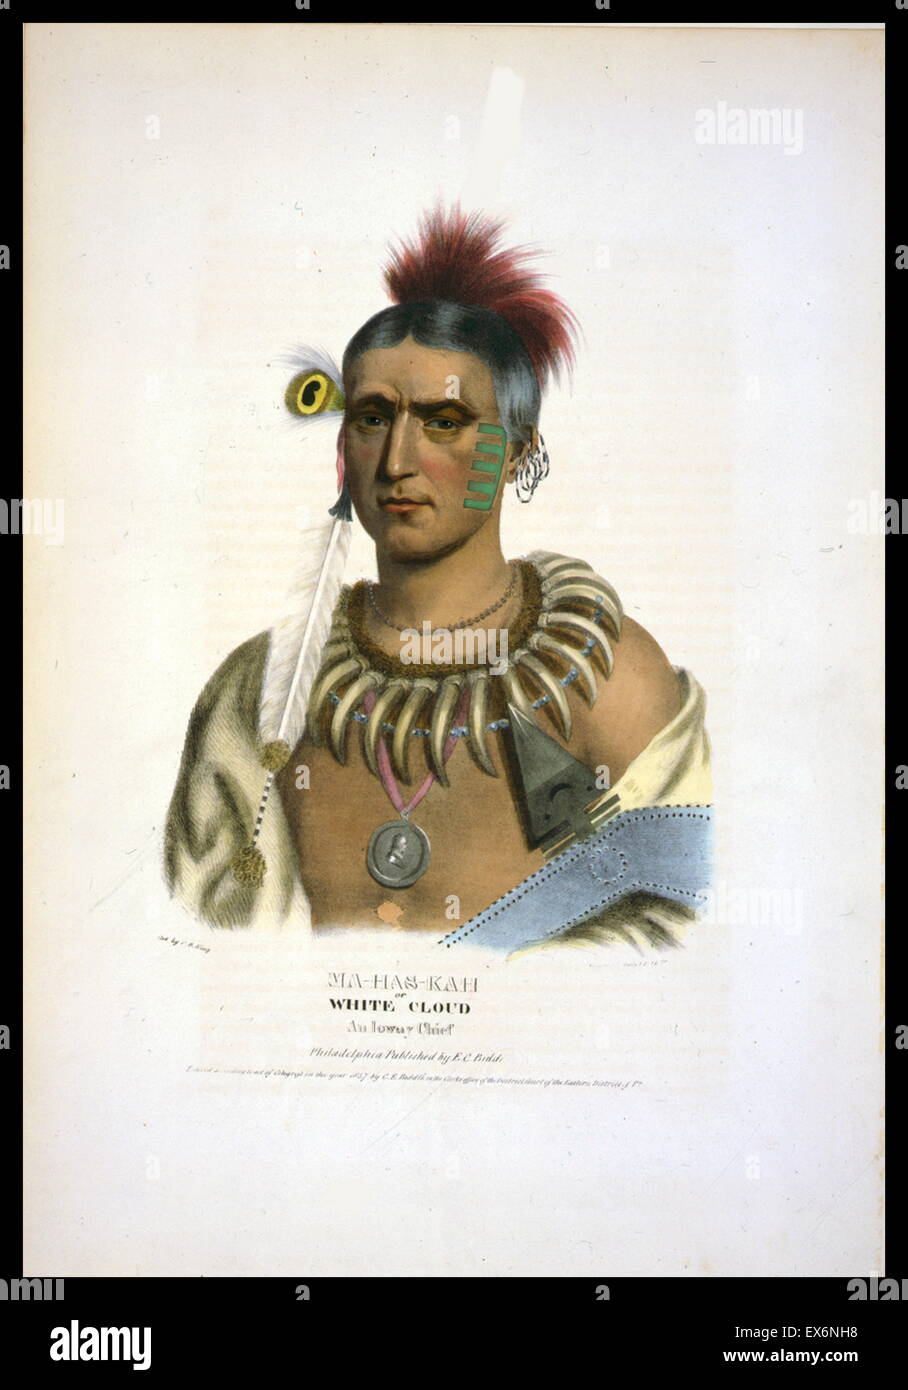 Ma-Has-Kah o nube blanca, un jefe Ioway garra, vistiendo un collar, un retrato del medallón en su cuello, pendientes y las plumas. Los Ioway (Iowa) son un nativo americano Siouan quienes viven en Kansas y Nebraska u Oklahoma. Foto de stock